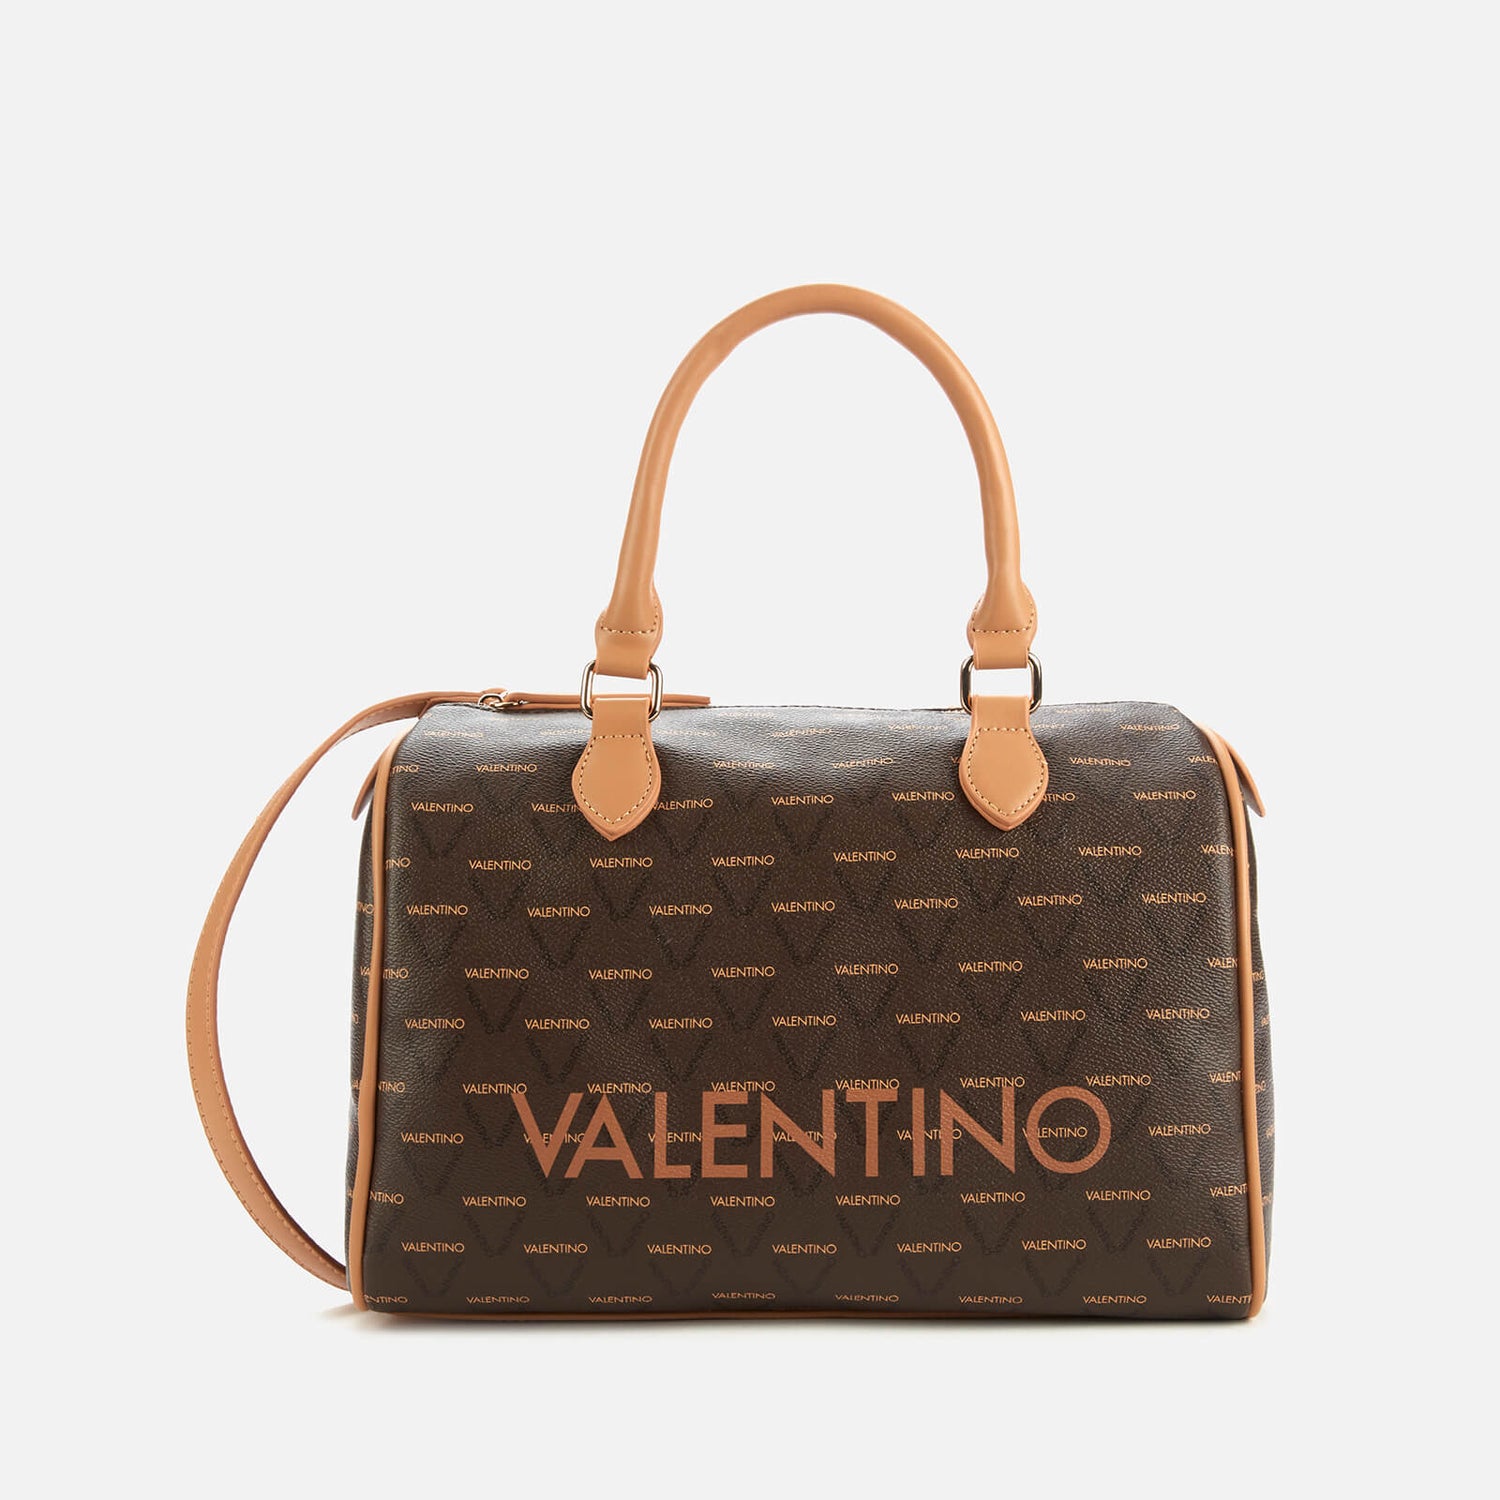 Valentino Women's Liuto Shopper Tote Bag - Multi